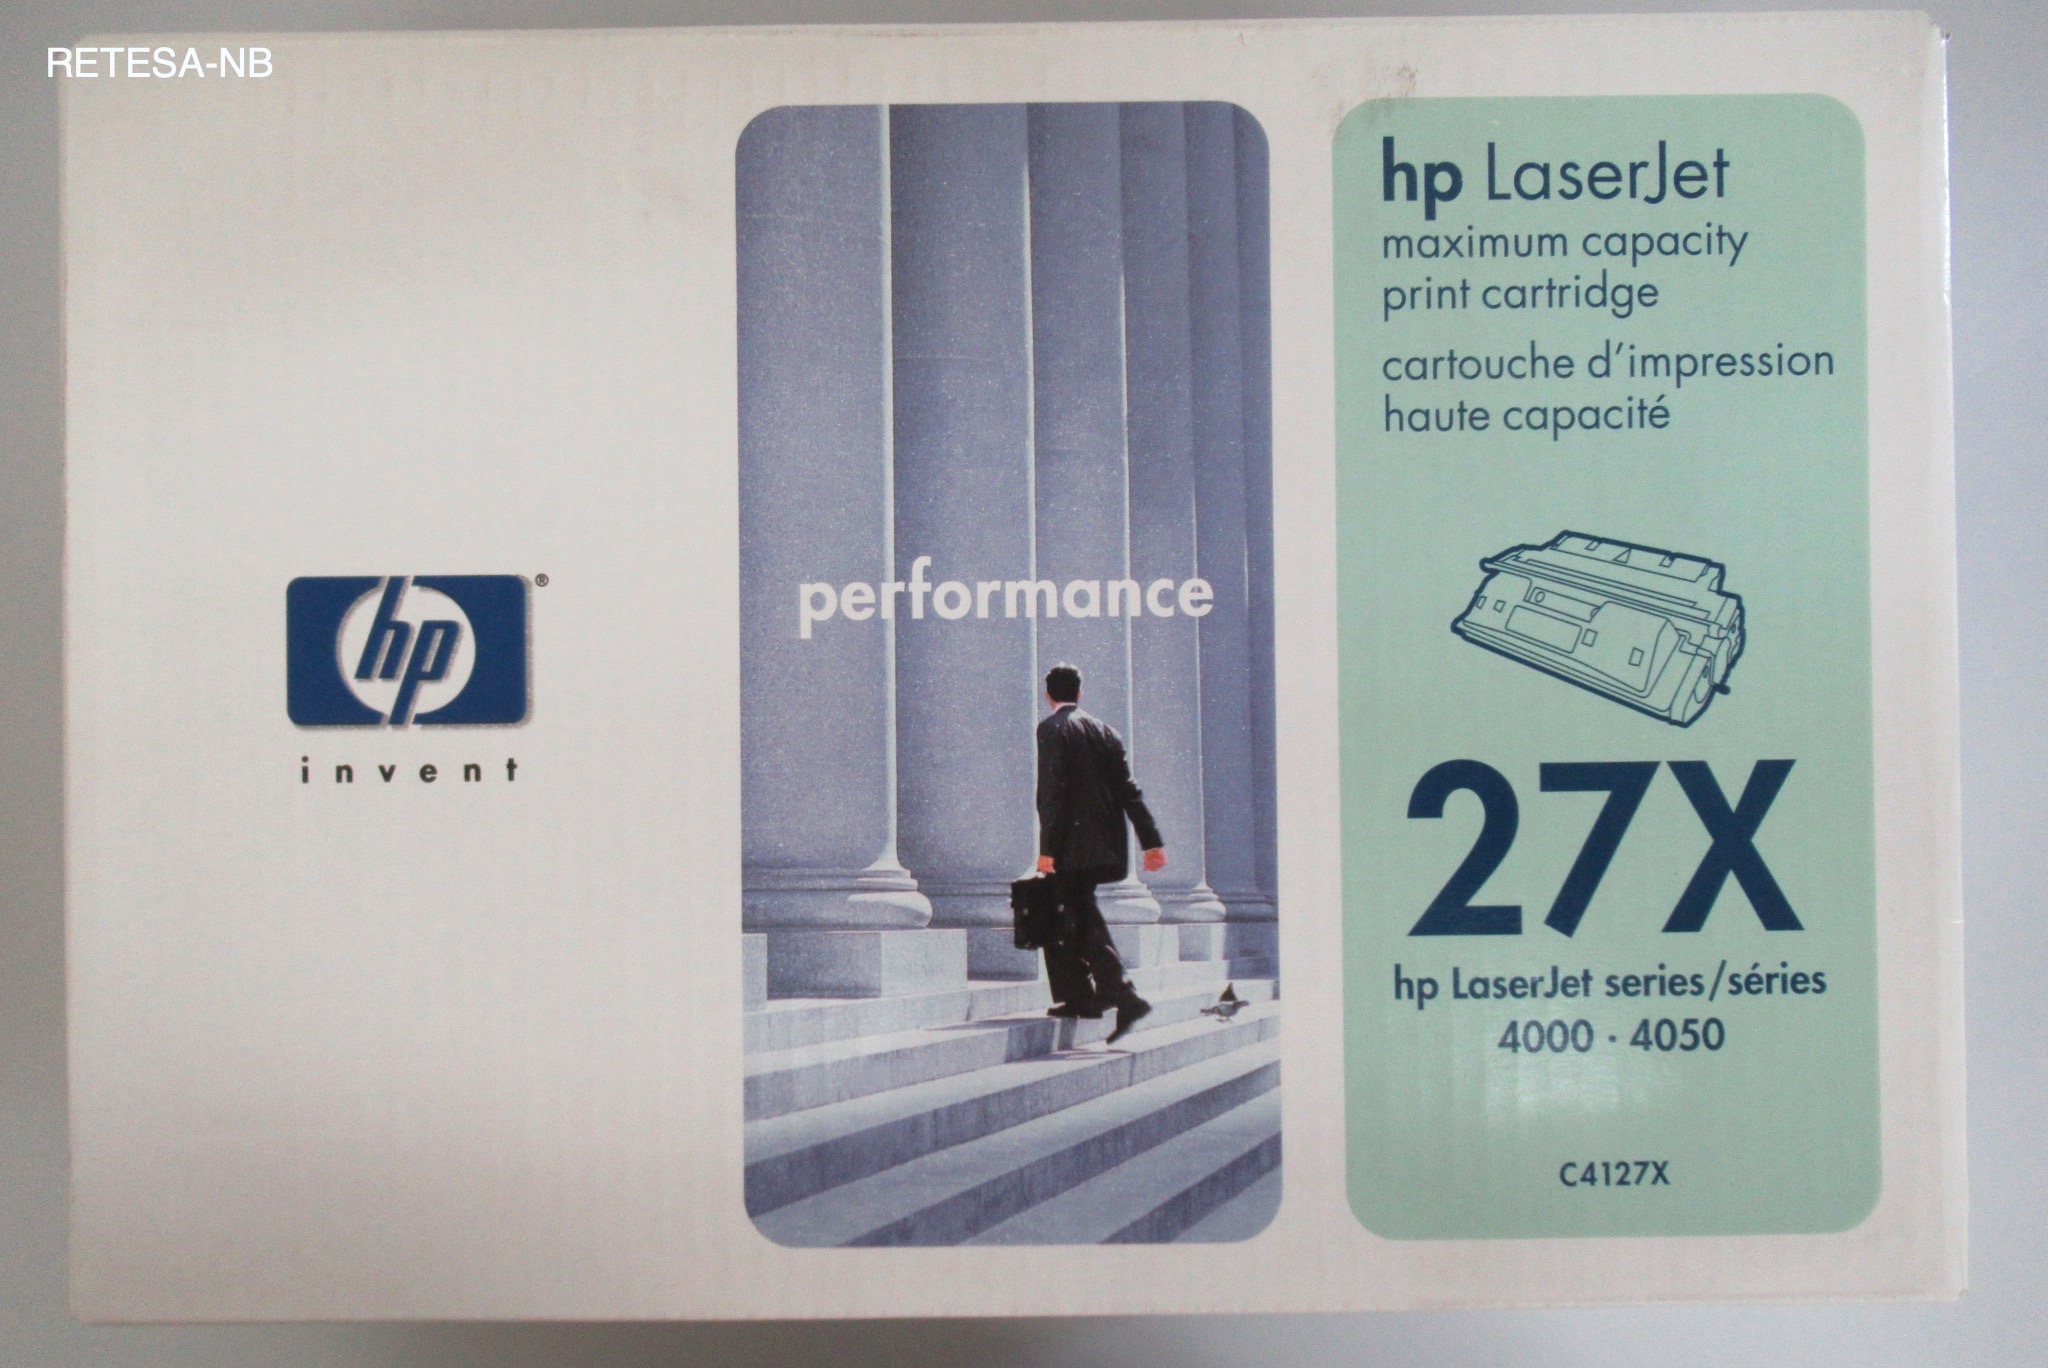 Toner HP C4127X für LaserJet 4000 schwarz